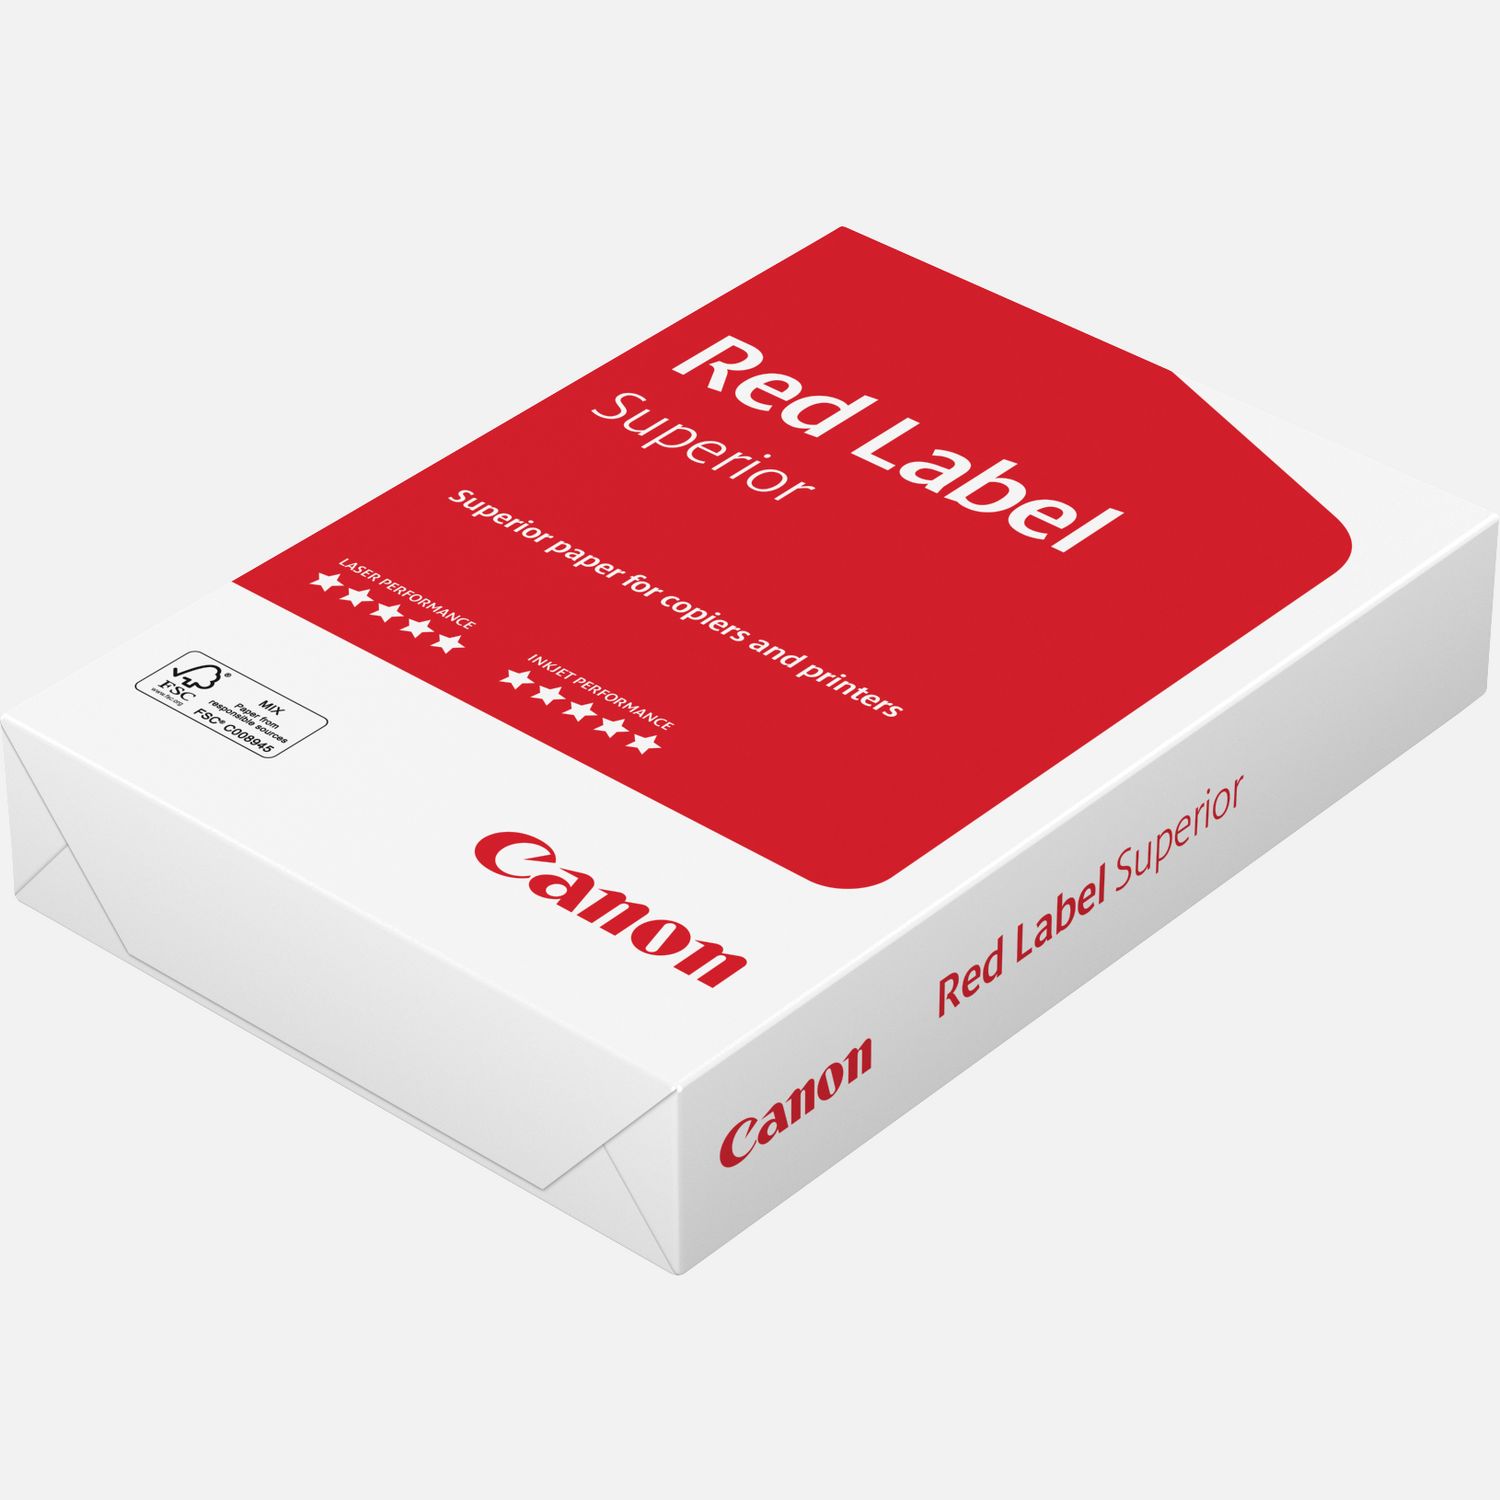 Canon Red Label Superior FSC g/m² A4 papier - 500 vel — Canon Store